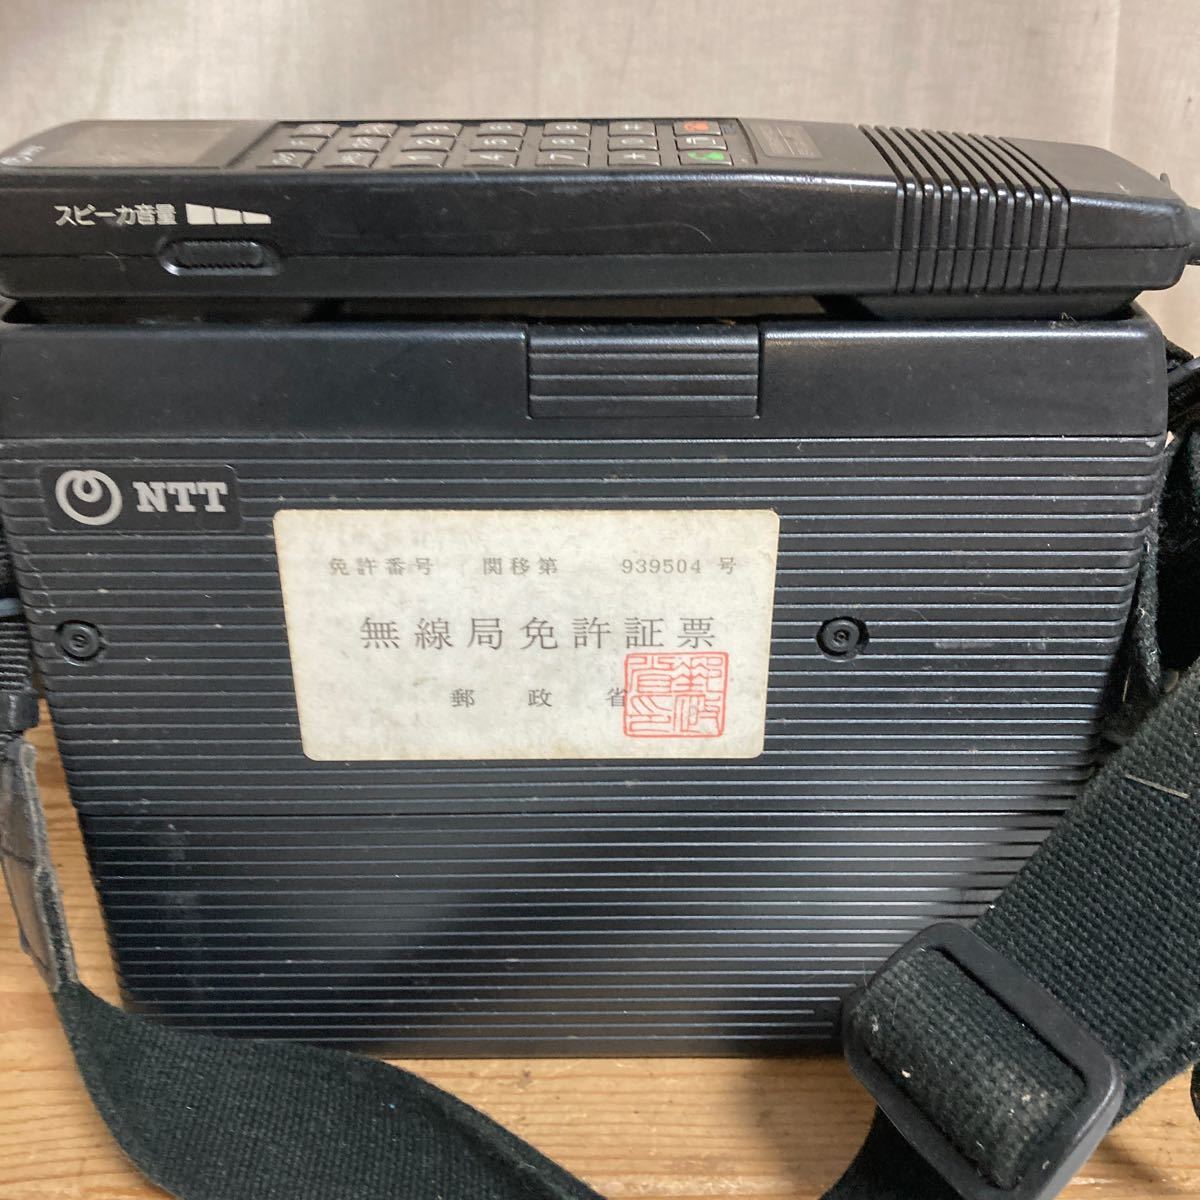 自動車無線電話用移動無線機 TZ-803 型 現状品 日本電信電話会社 NTT 携帯電話 当時物 昭和レトロ_画像6